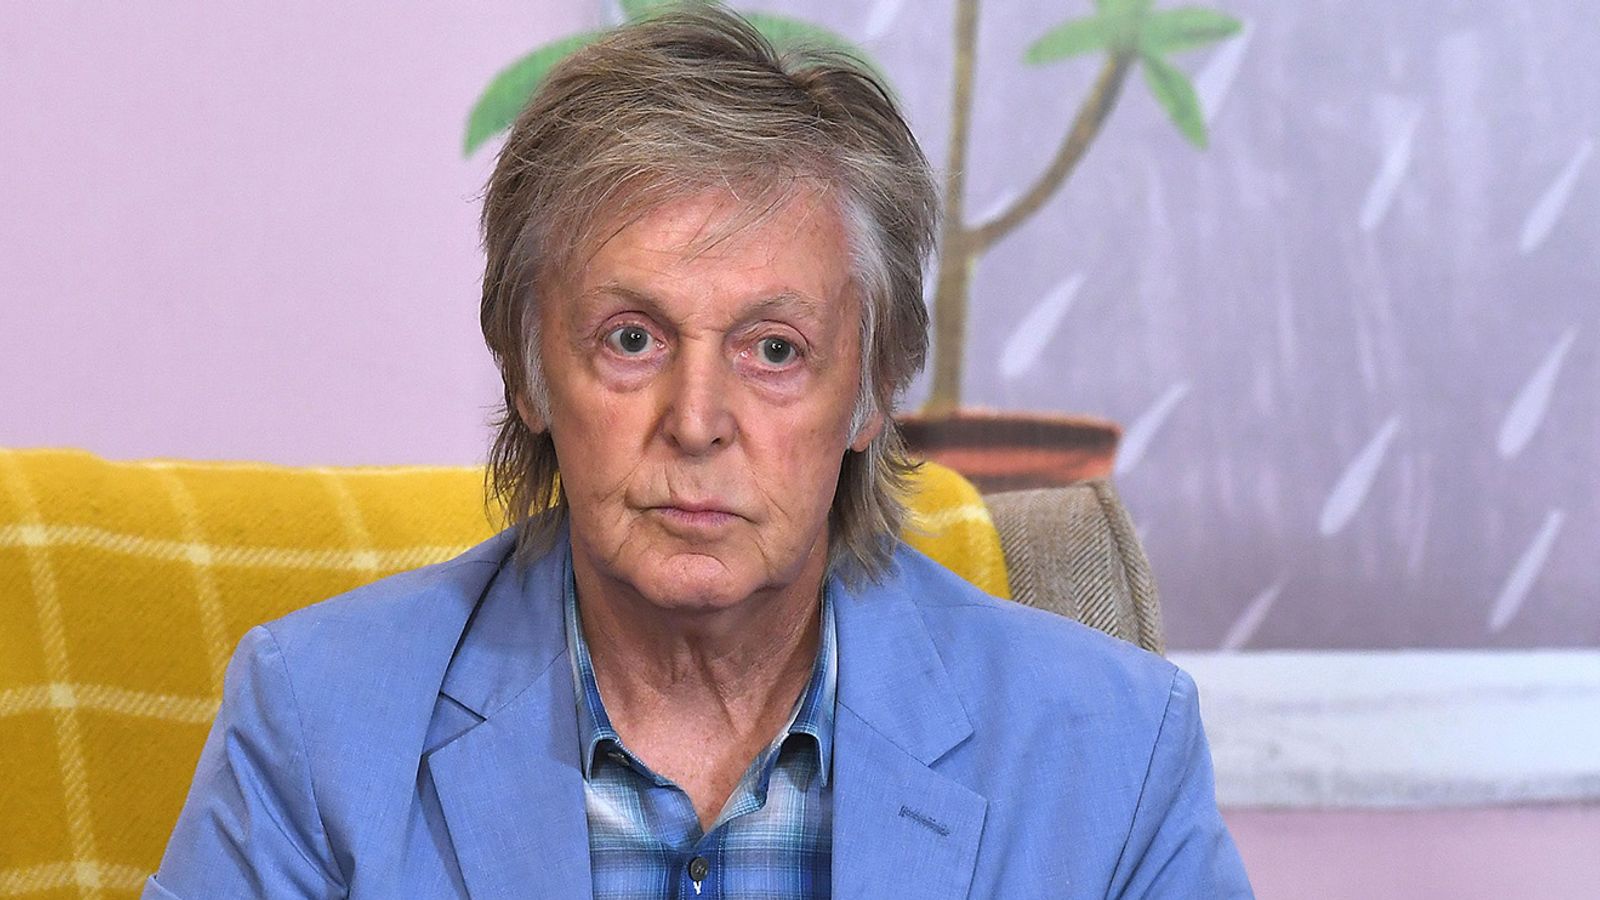 Paul McCartney en deuil : le chanteur rend hommage à une proche des Beatles décédée